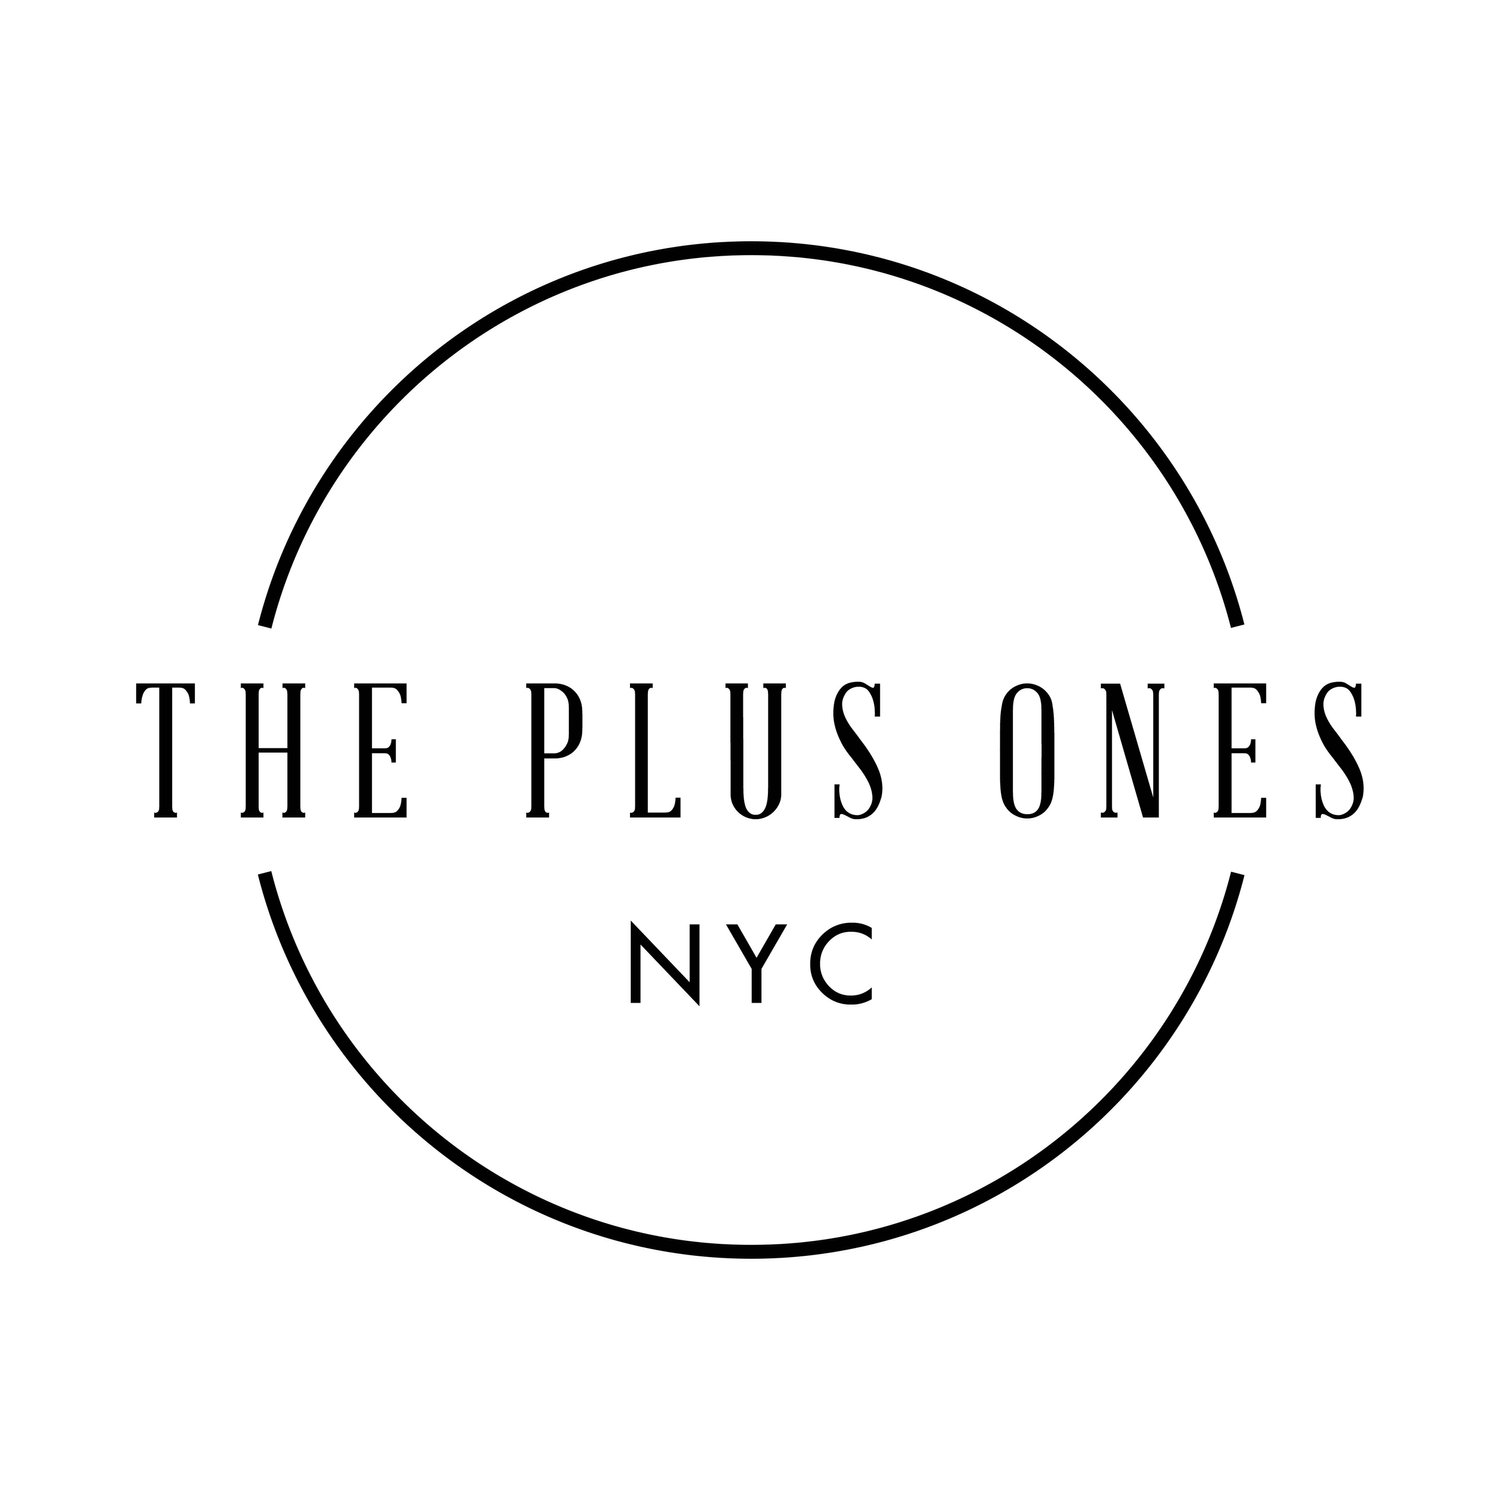 The Plus Ones NYC